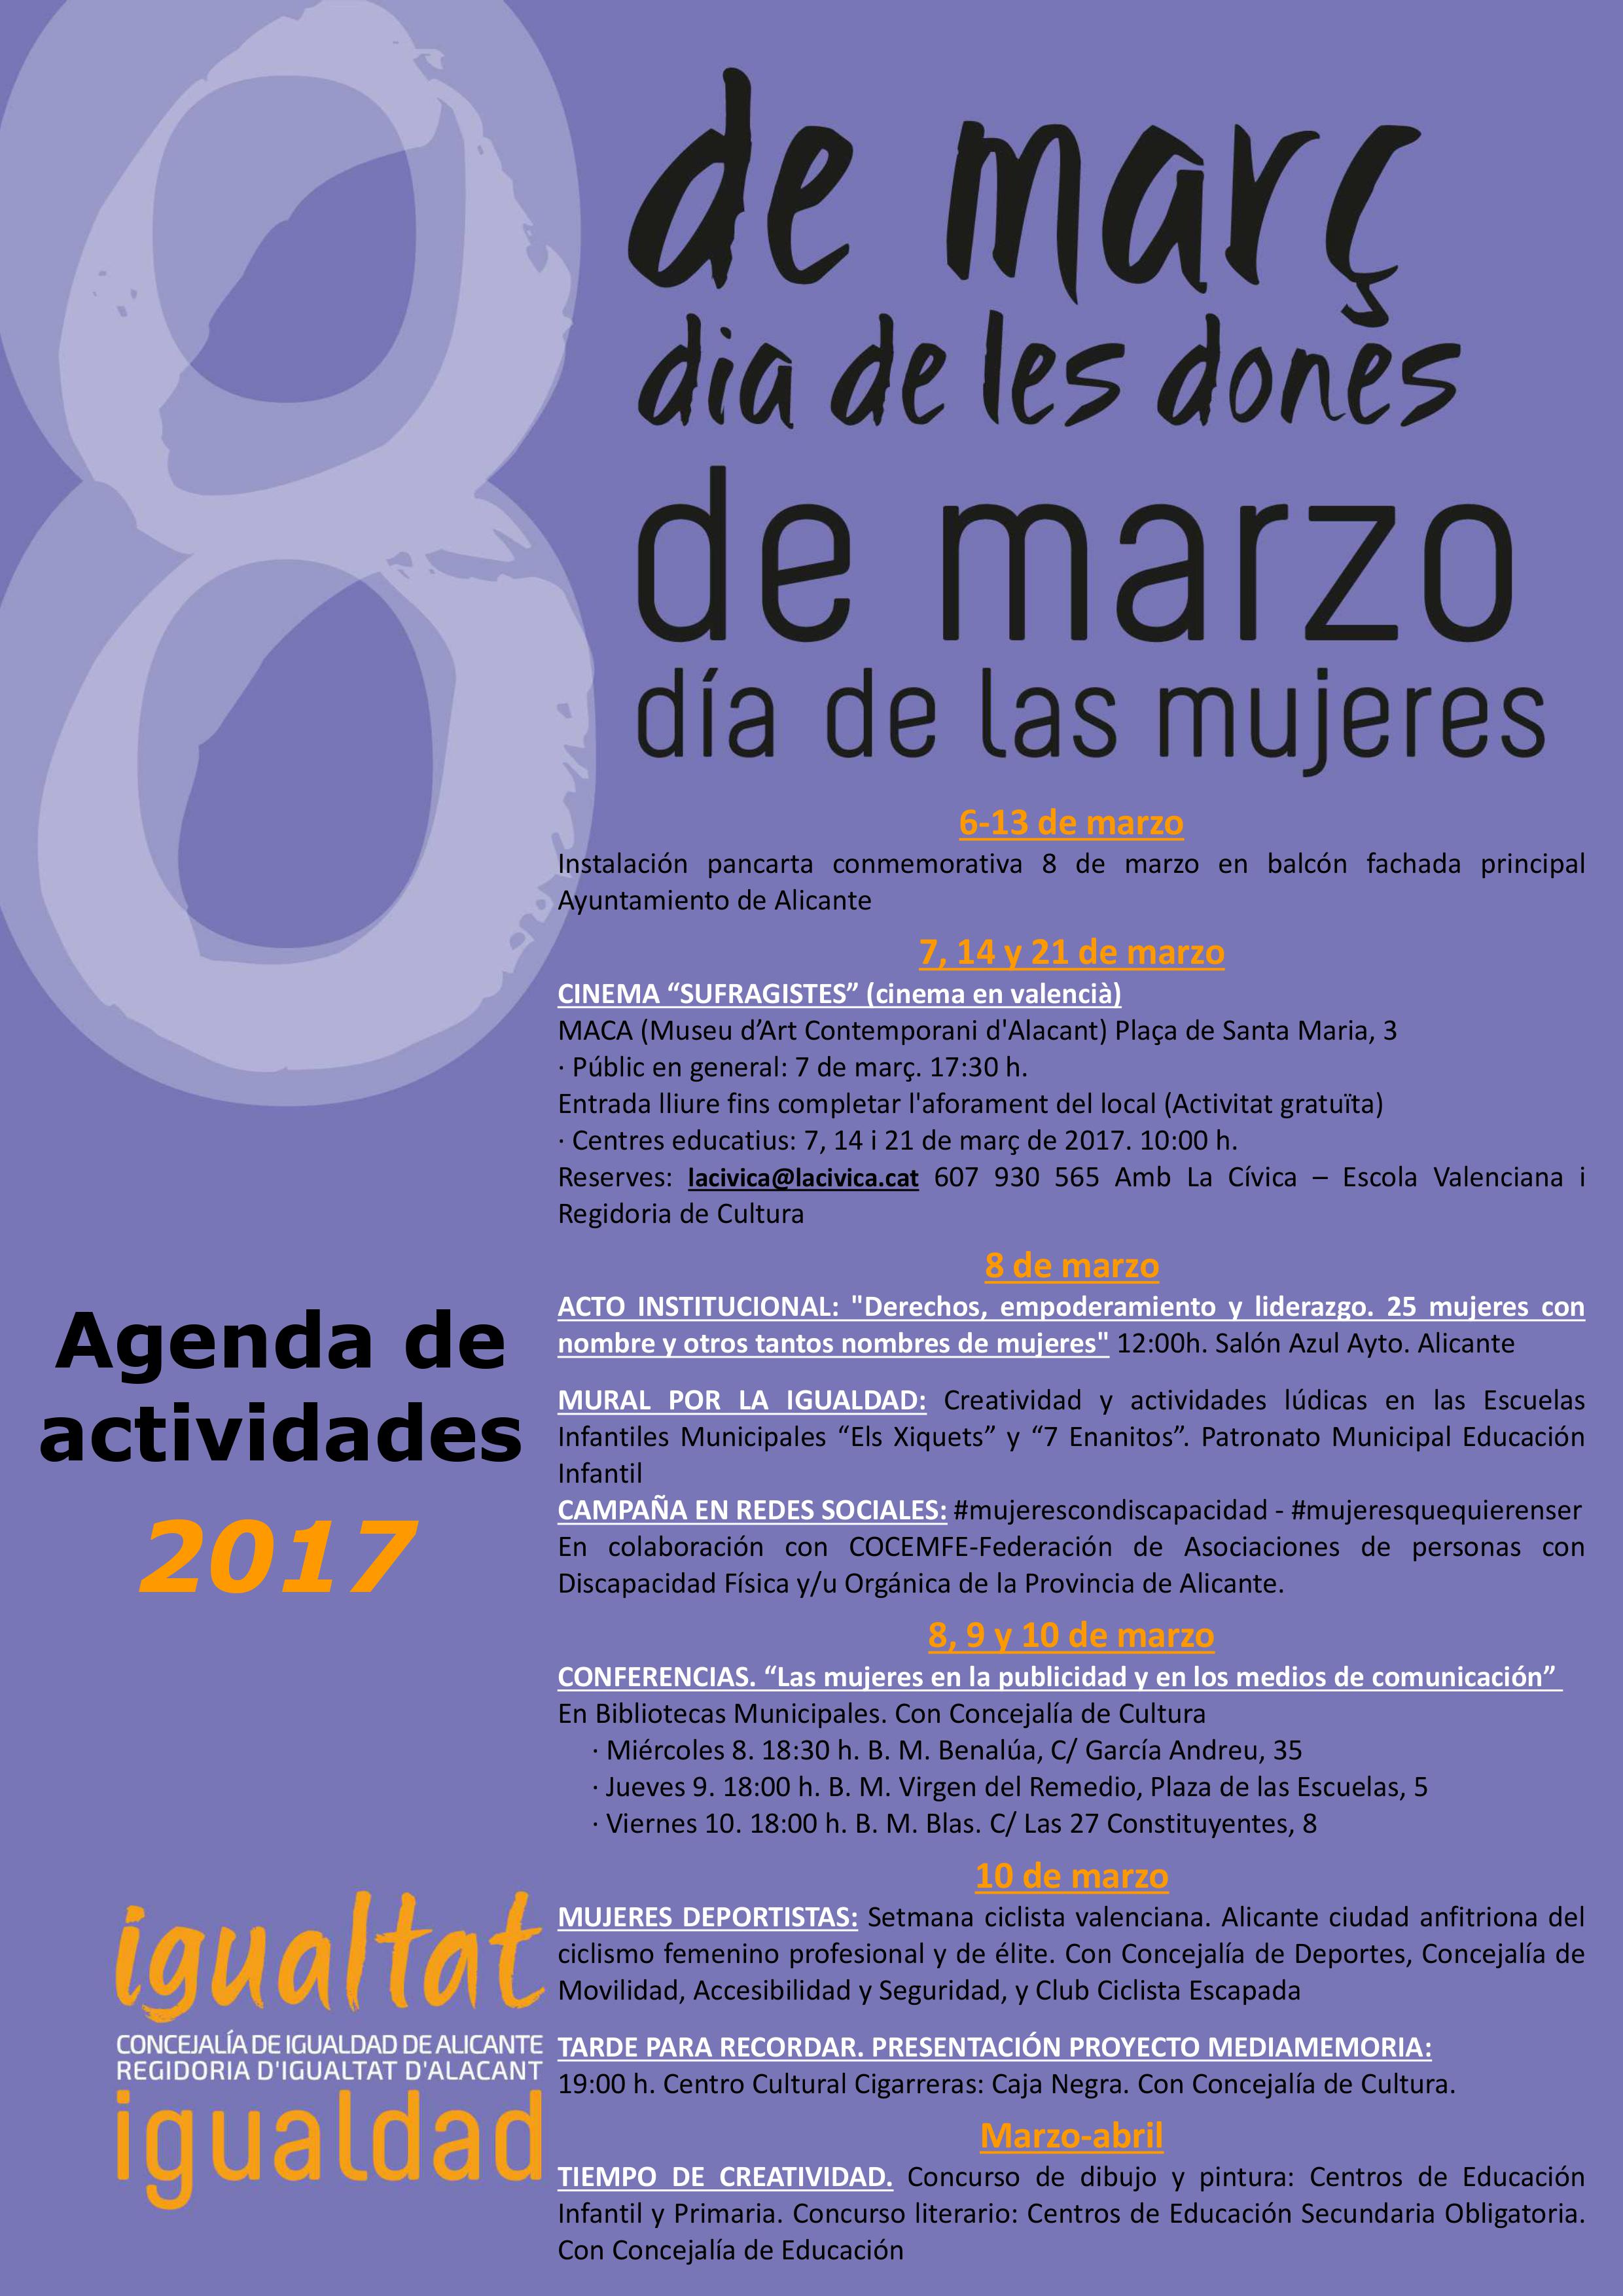 8 de marzo: Día de las mujeres | Ayuntamiento de Alicante